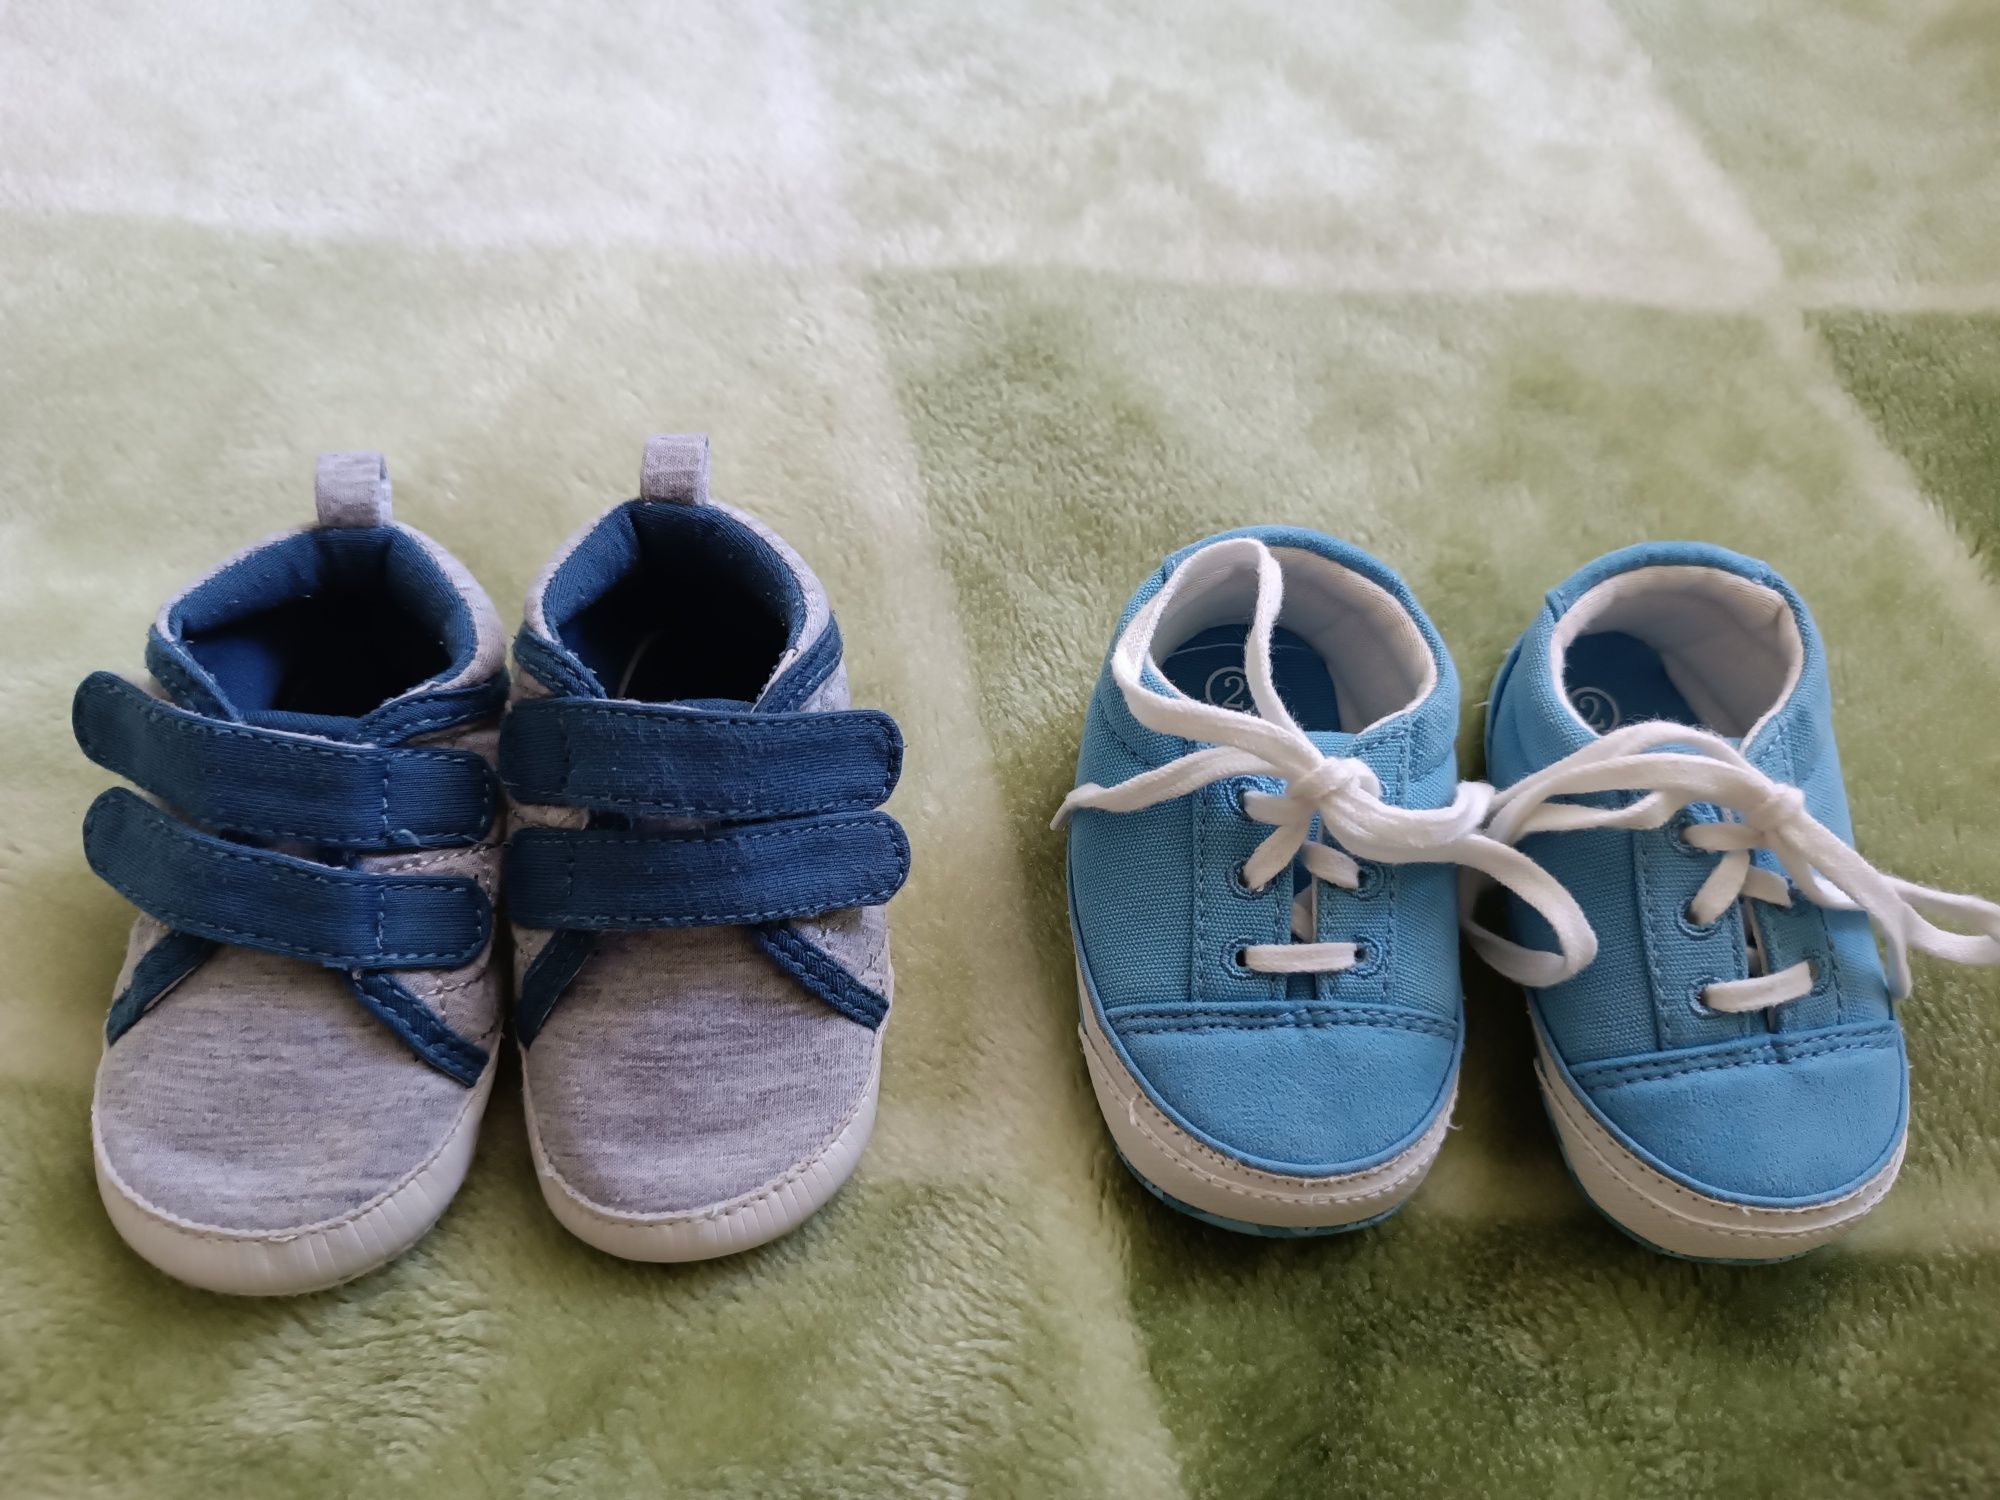 Zestaw dwóch par bucików niemowlęcych - niechodki